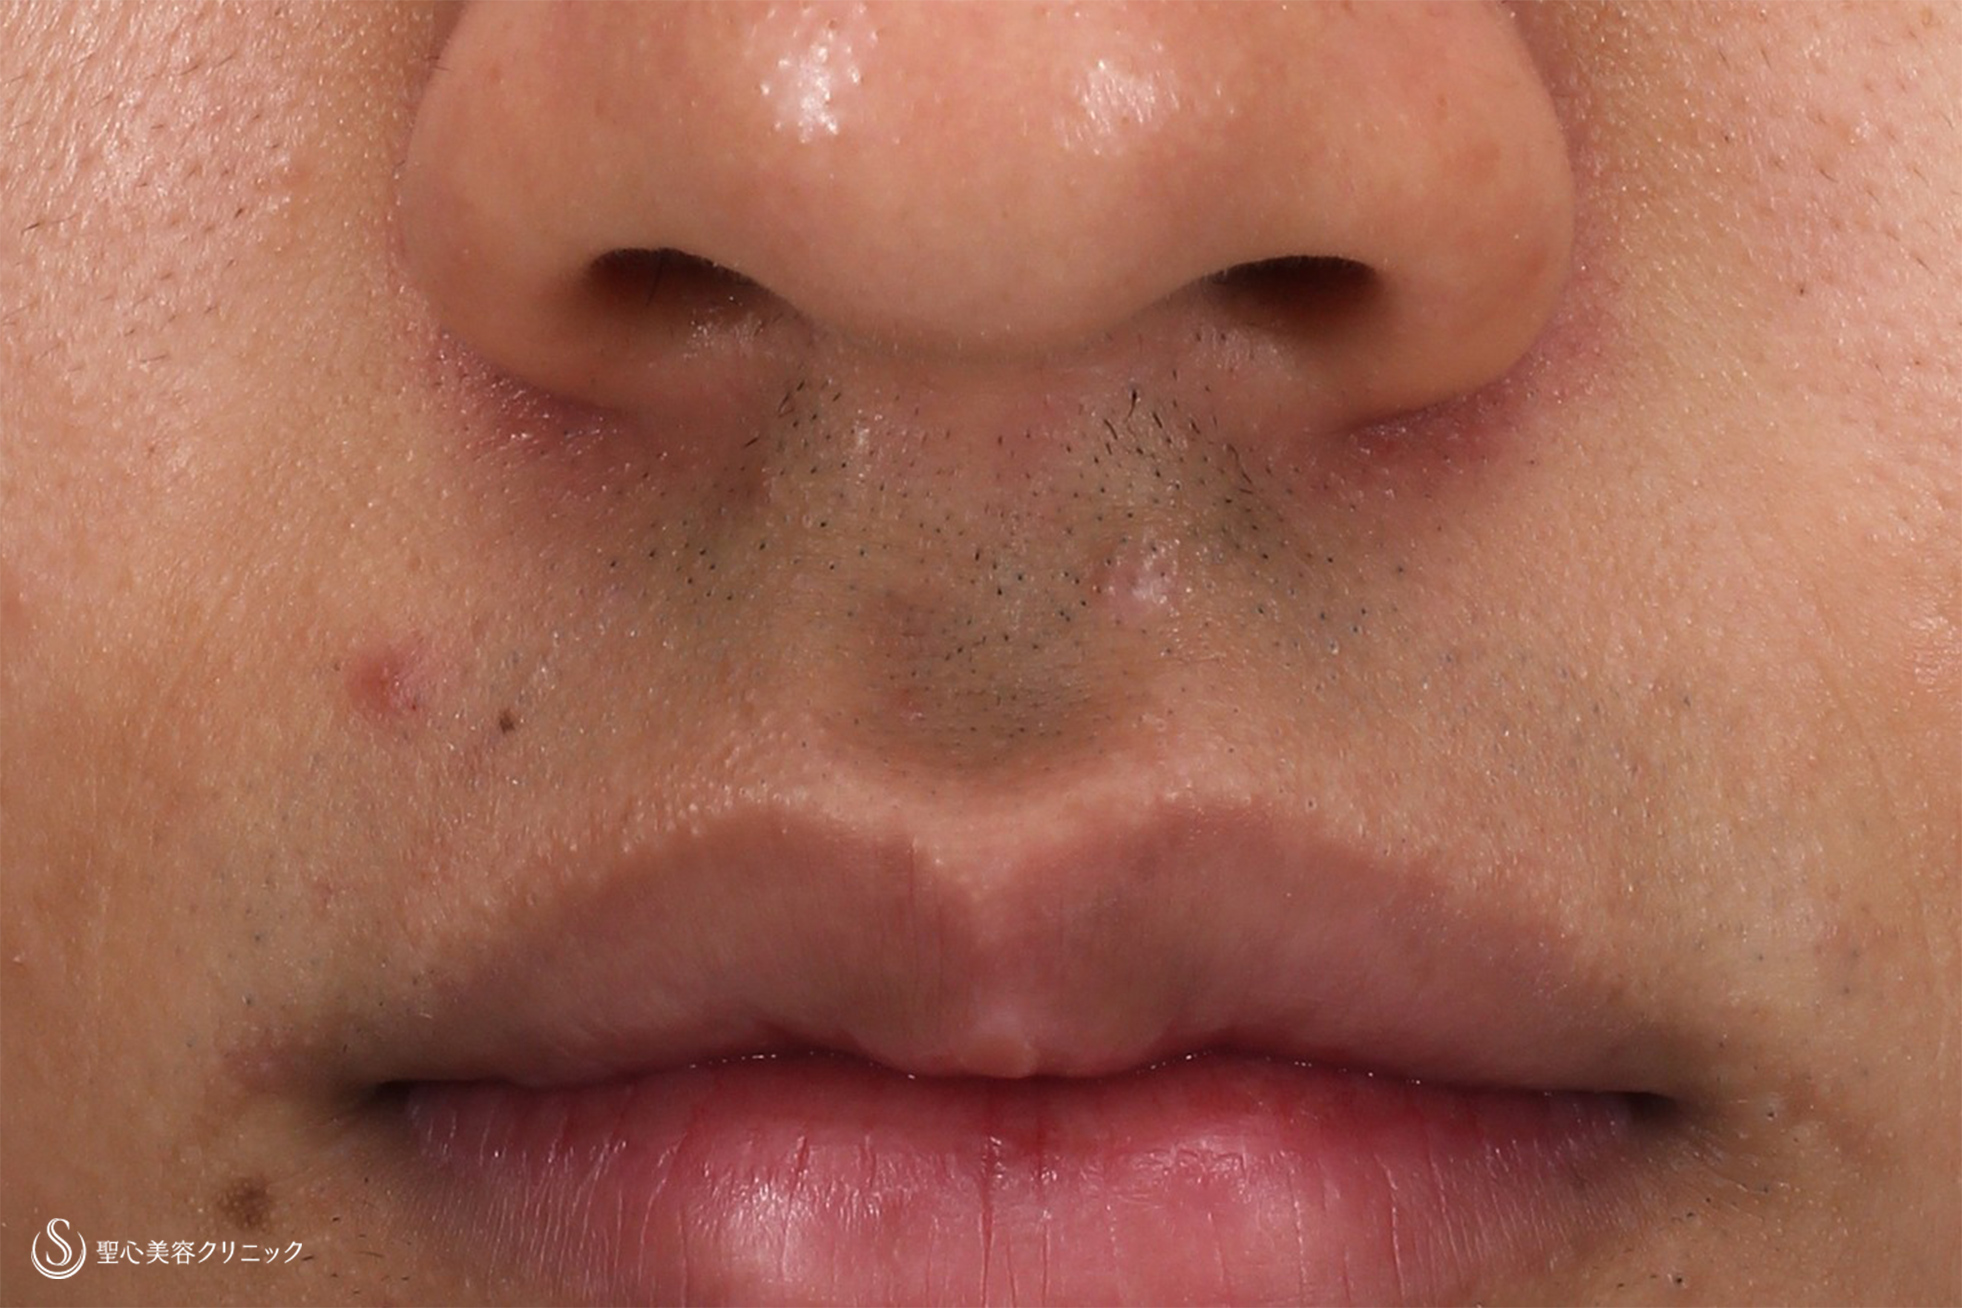 10代男性 鼻の下のホクロ 電気凝固法 8か月後 症例写真 美容整形 美容外科なら聖心美容クリニック